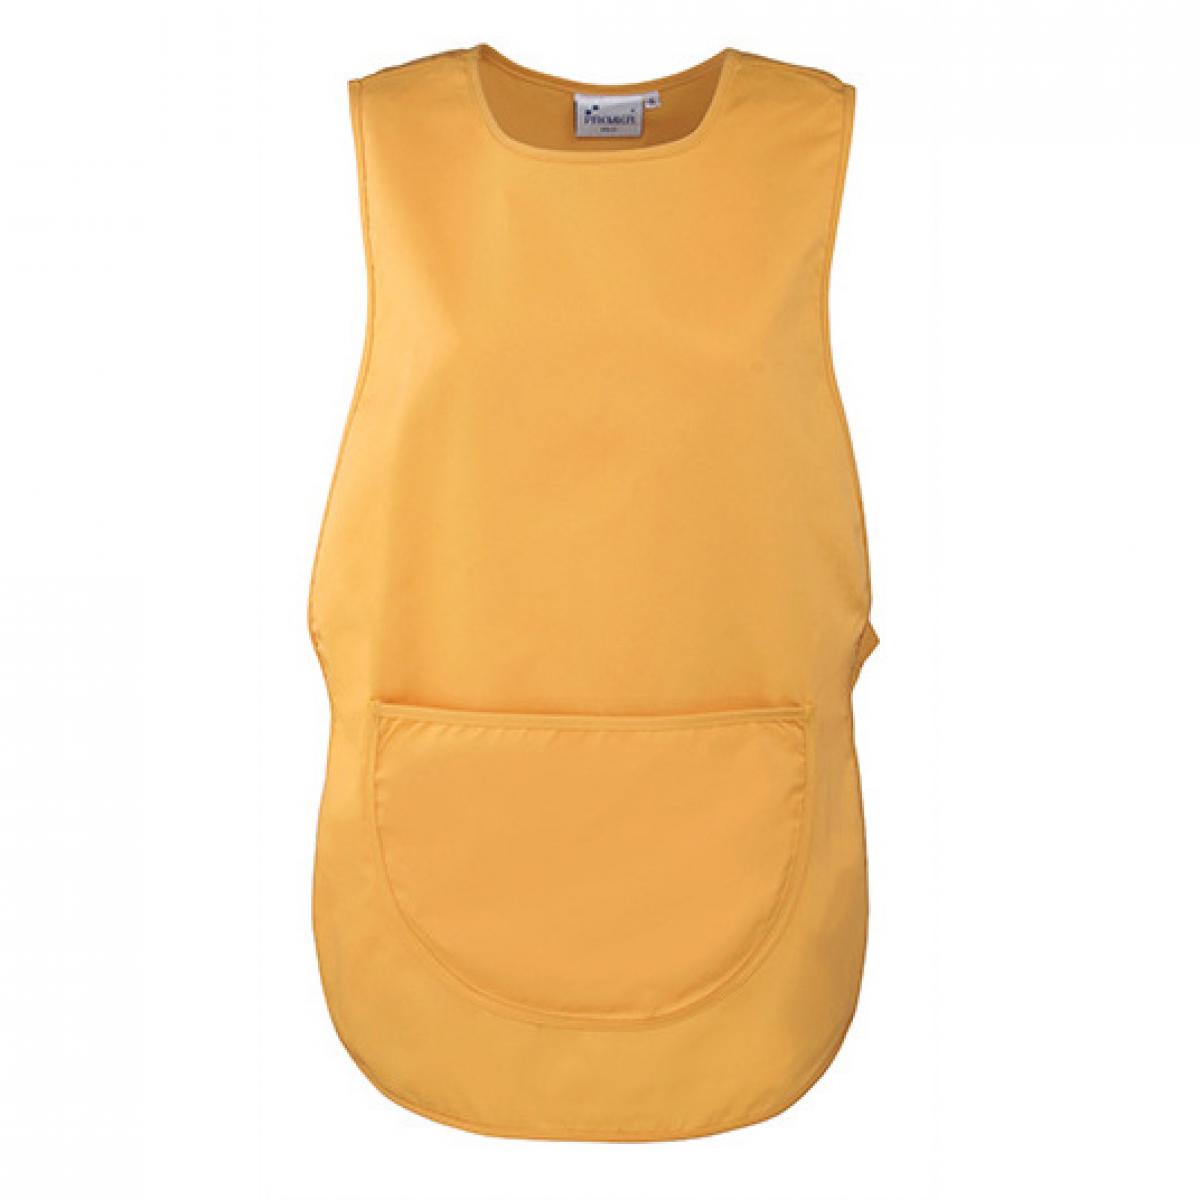 Hersteller: Premier Workwear Herstellernummer: PR171 Artikelbezeichnung: Women`s Pocket Tabard - Waschbar bis 60 °C Farbe: Sunflower (ca. Pantone 136c)